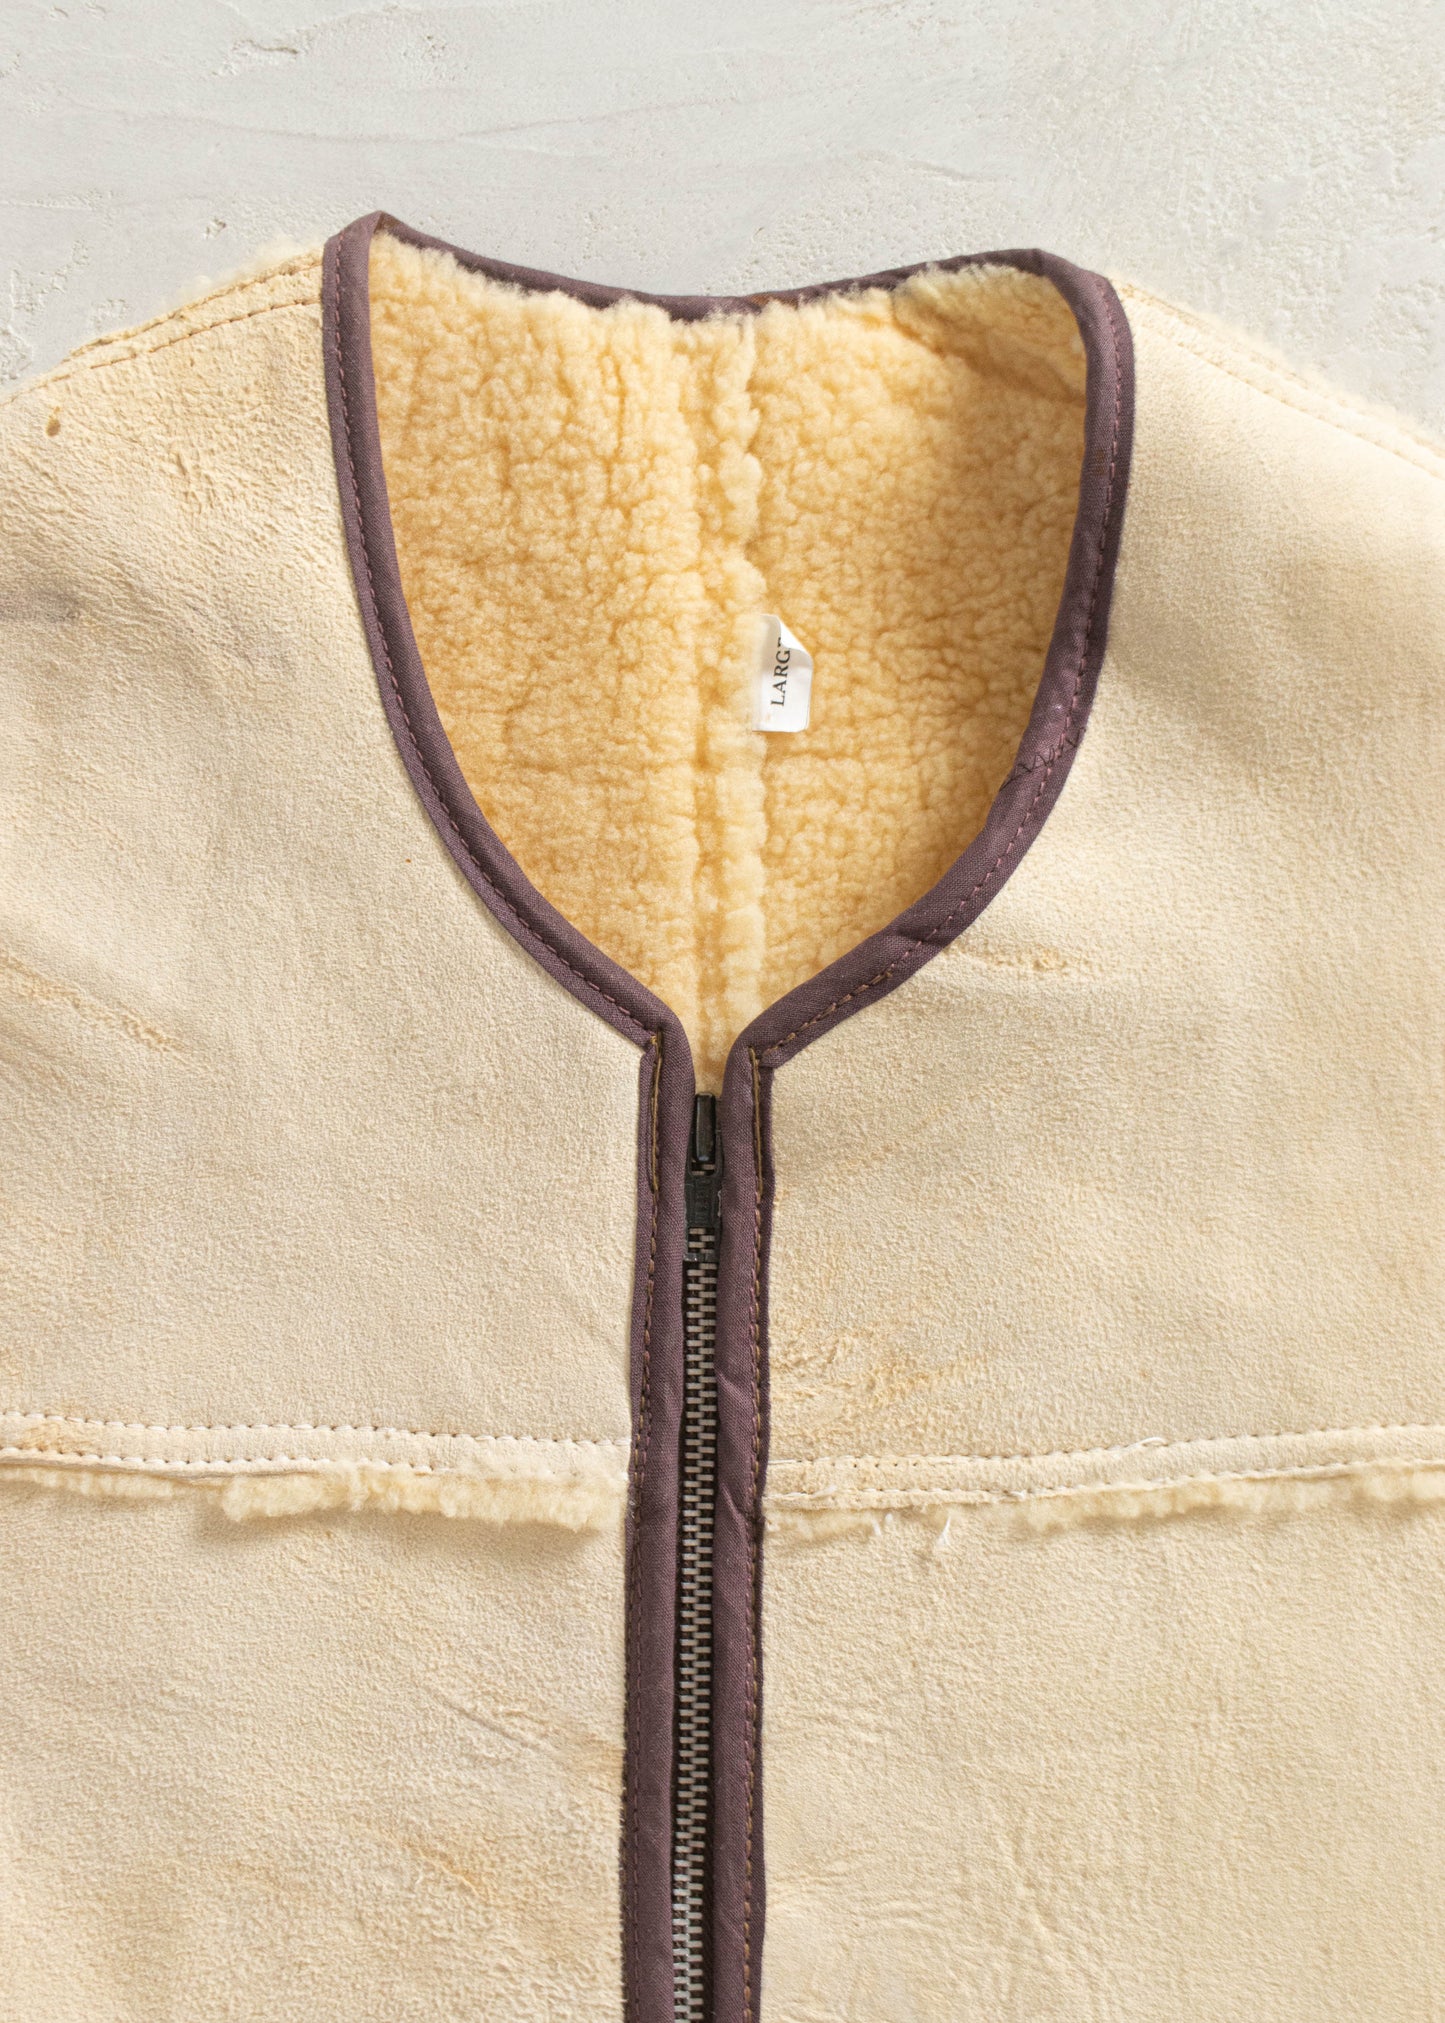 1970s Suede Shearling Vest Size M/L